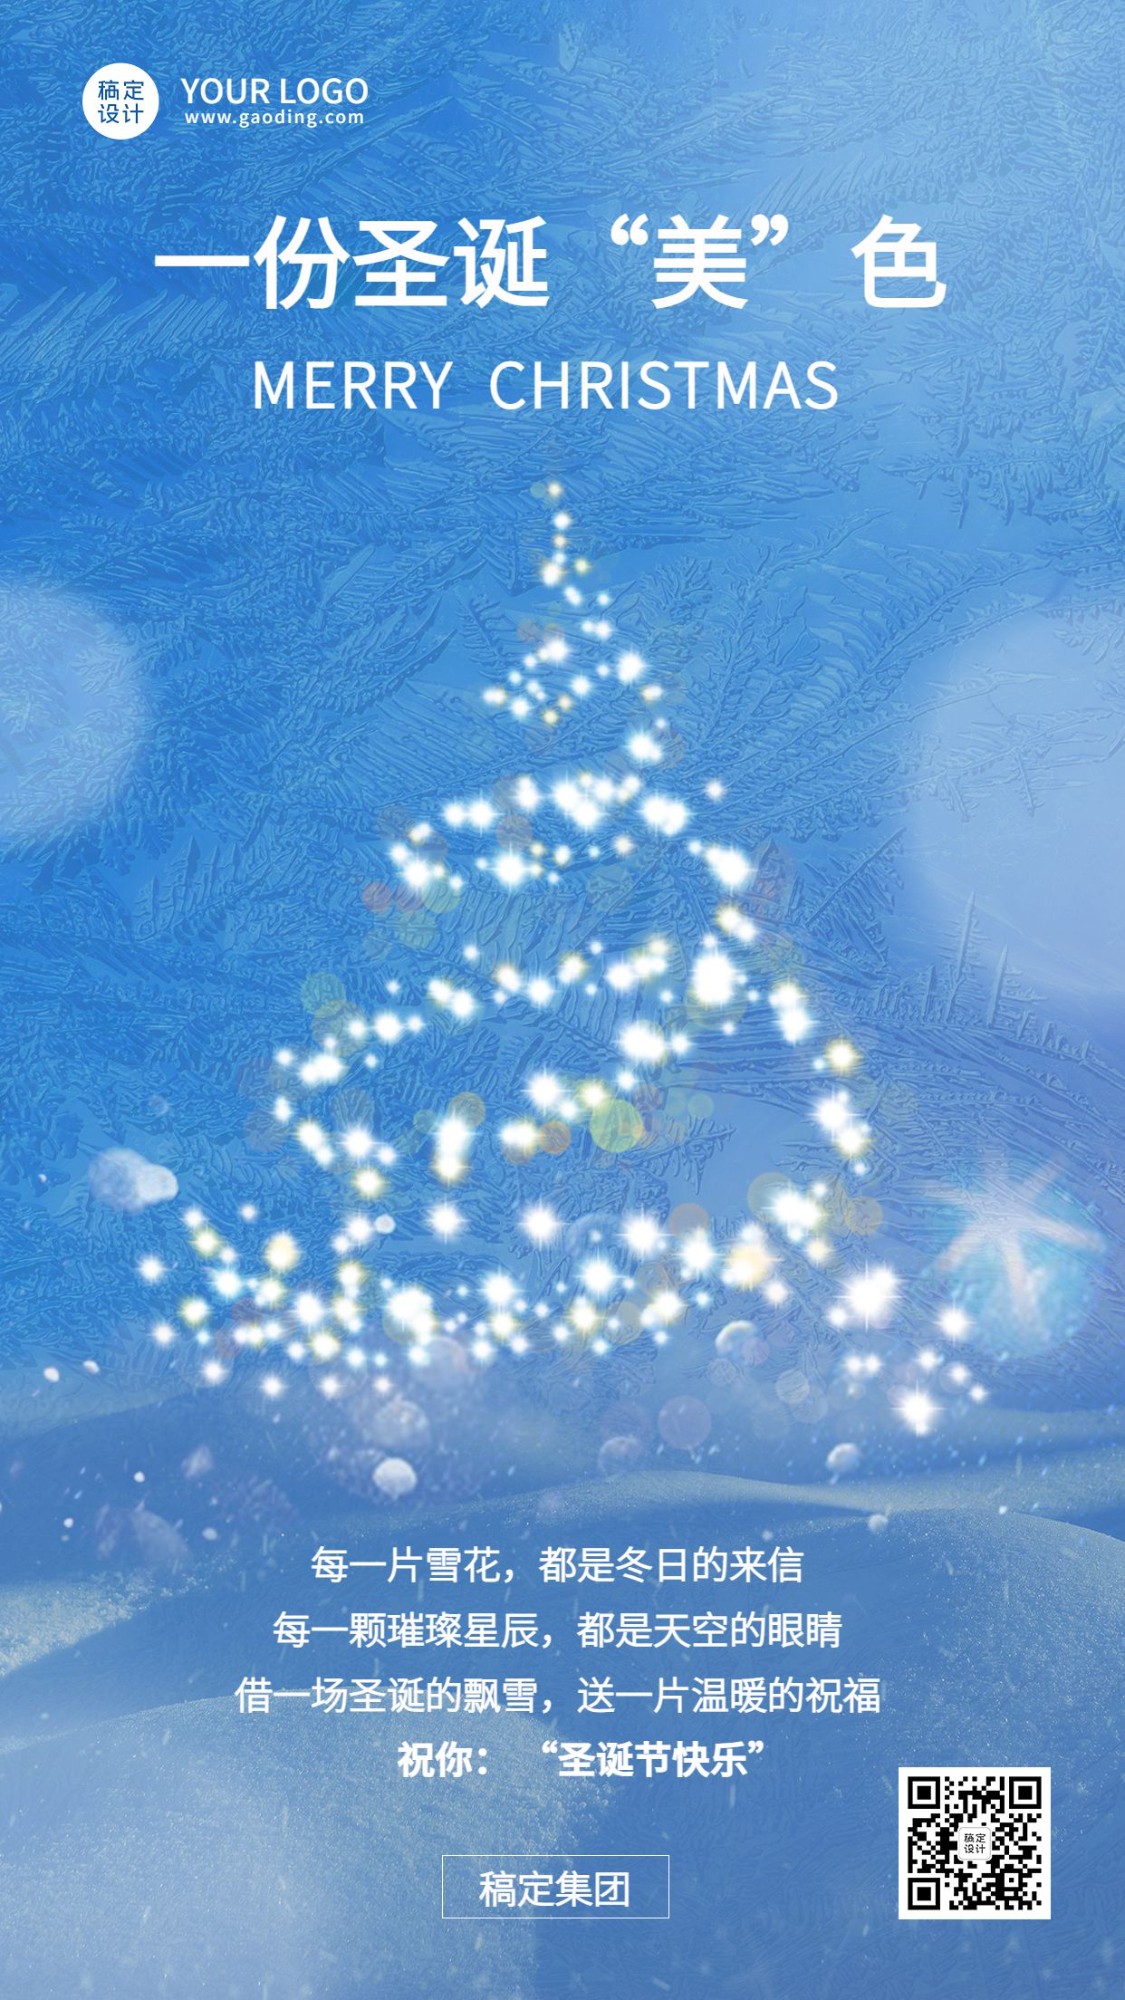 圣诞节企业祝福贺卡简约实景合成贺卡手机海报